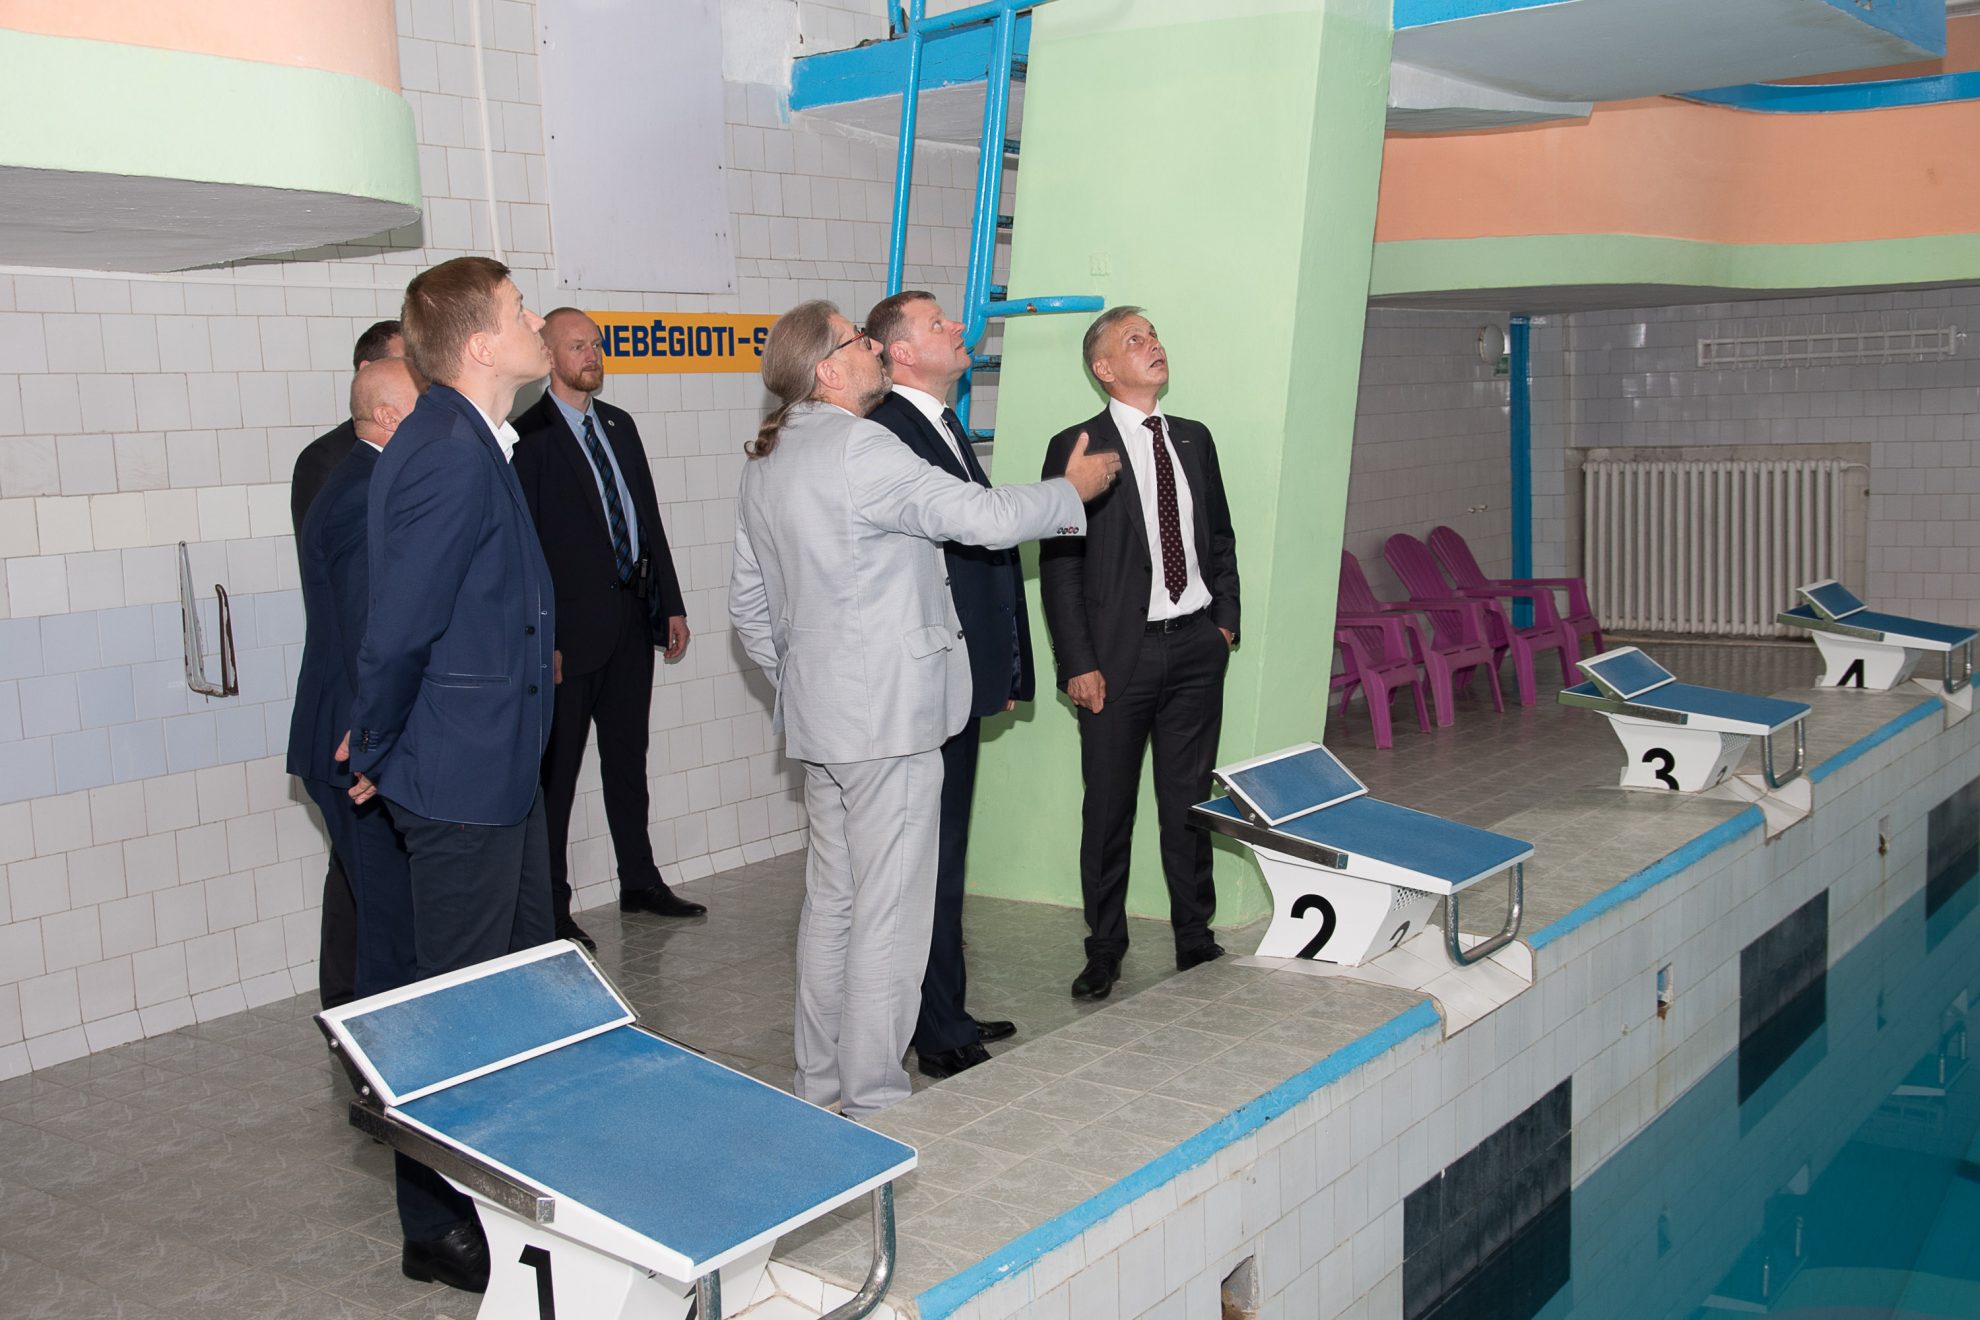 Panevėžio miesto meras Rytis Mykolas Račkauskas premjerui Sauliu Skverneliui antradienį Vyriausybėje pristatys miesto planus statyti olimpinį baseiną.